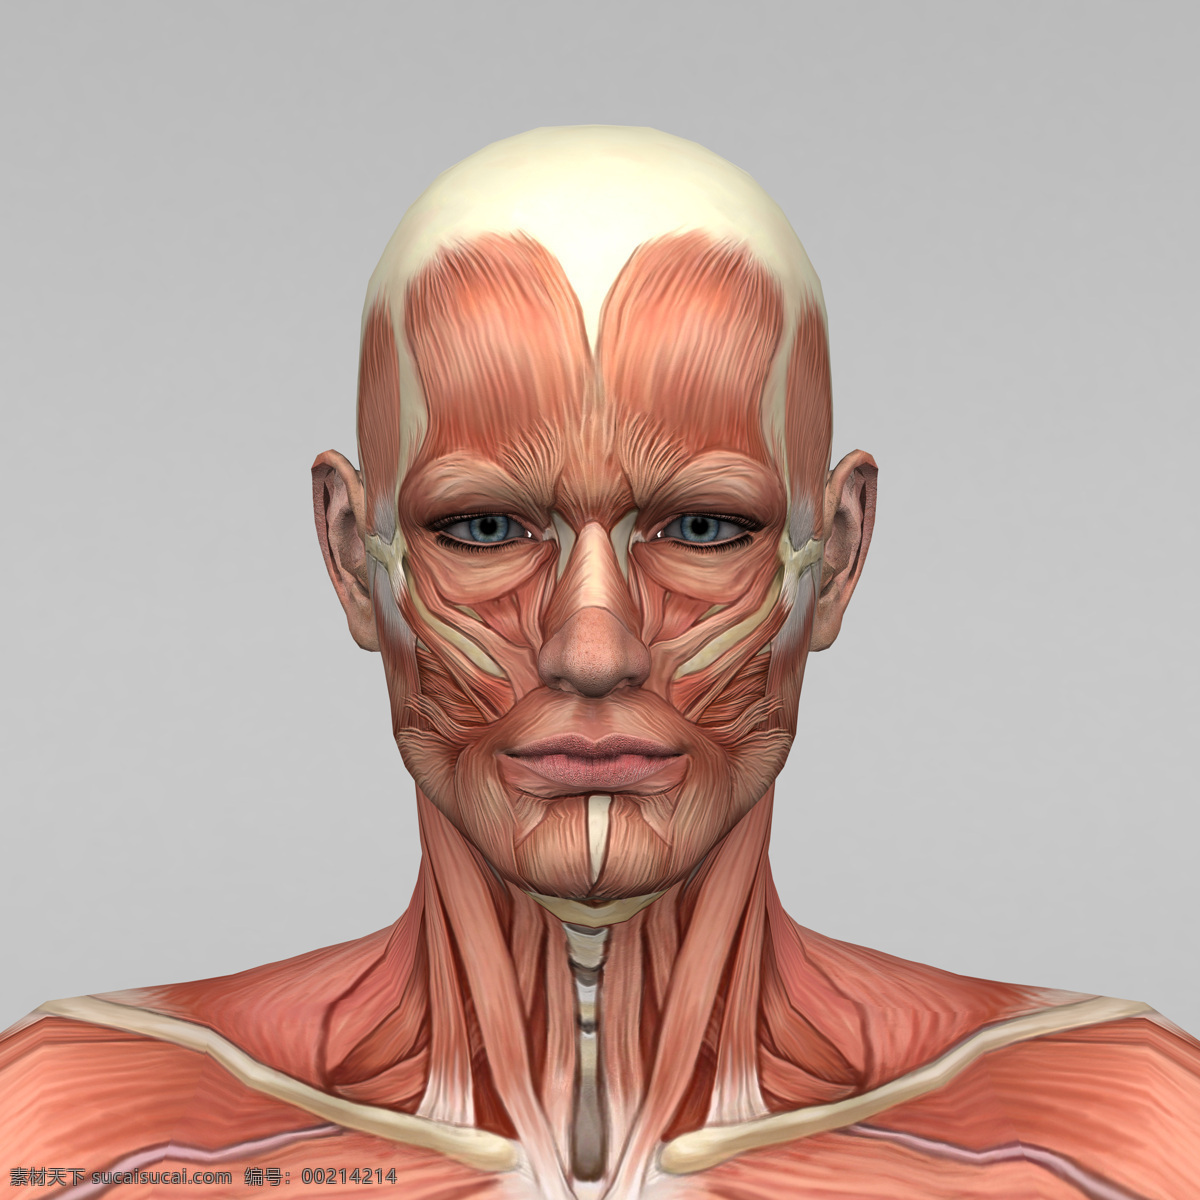 头部 肌肉 组织 头部肌肉组织 人体 素描画 女性 人体肌肉器官 其他人物 医疗护理 现代科技